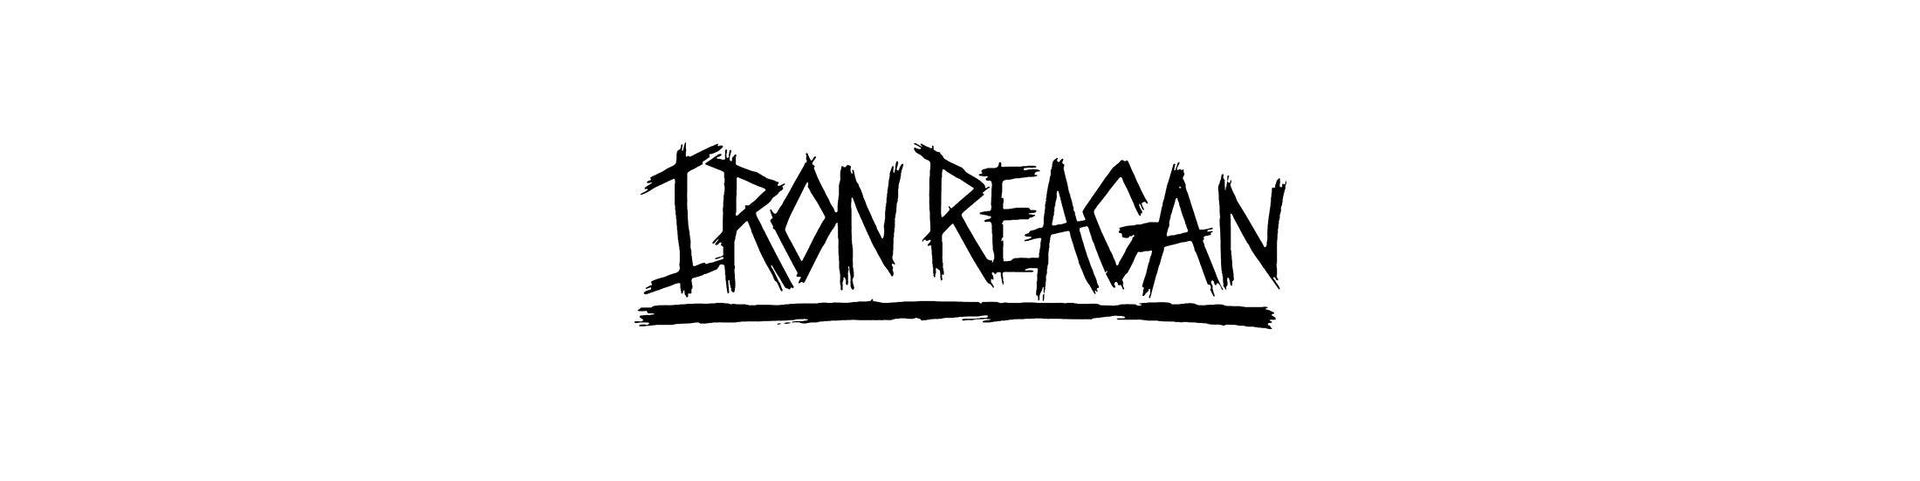 Shop – Iron Reagan – Band & Music Merch – Cold Cuts Merch